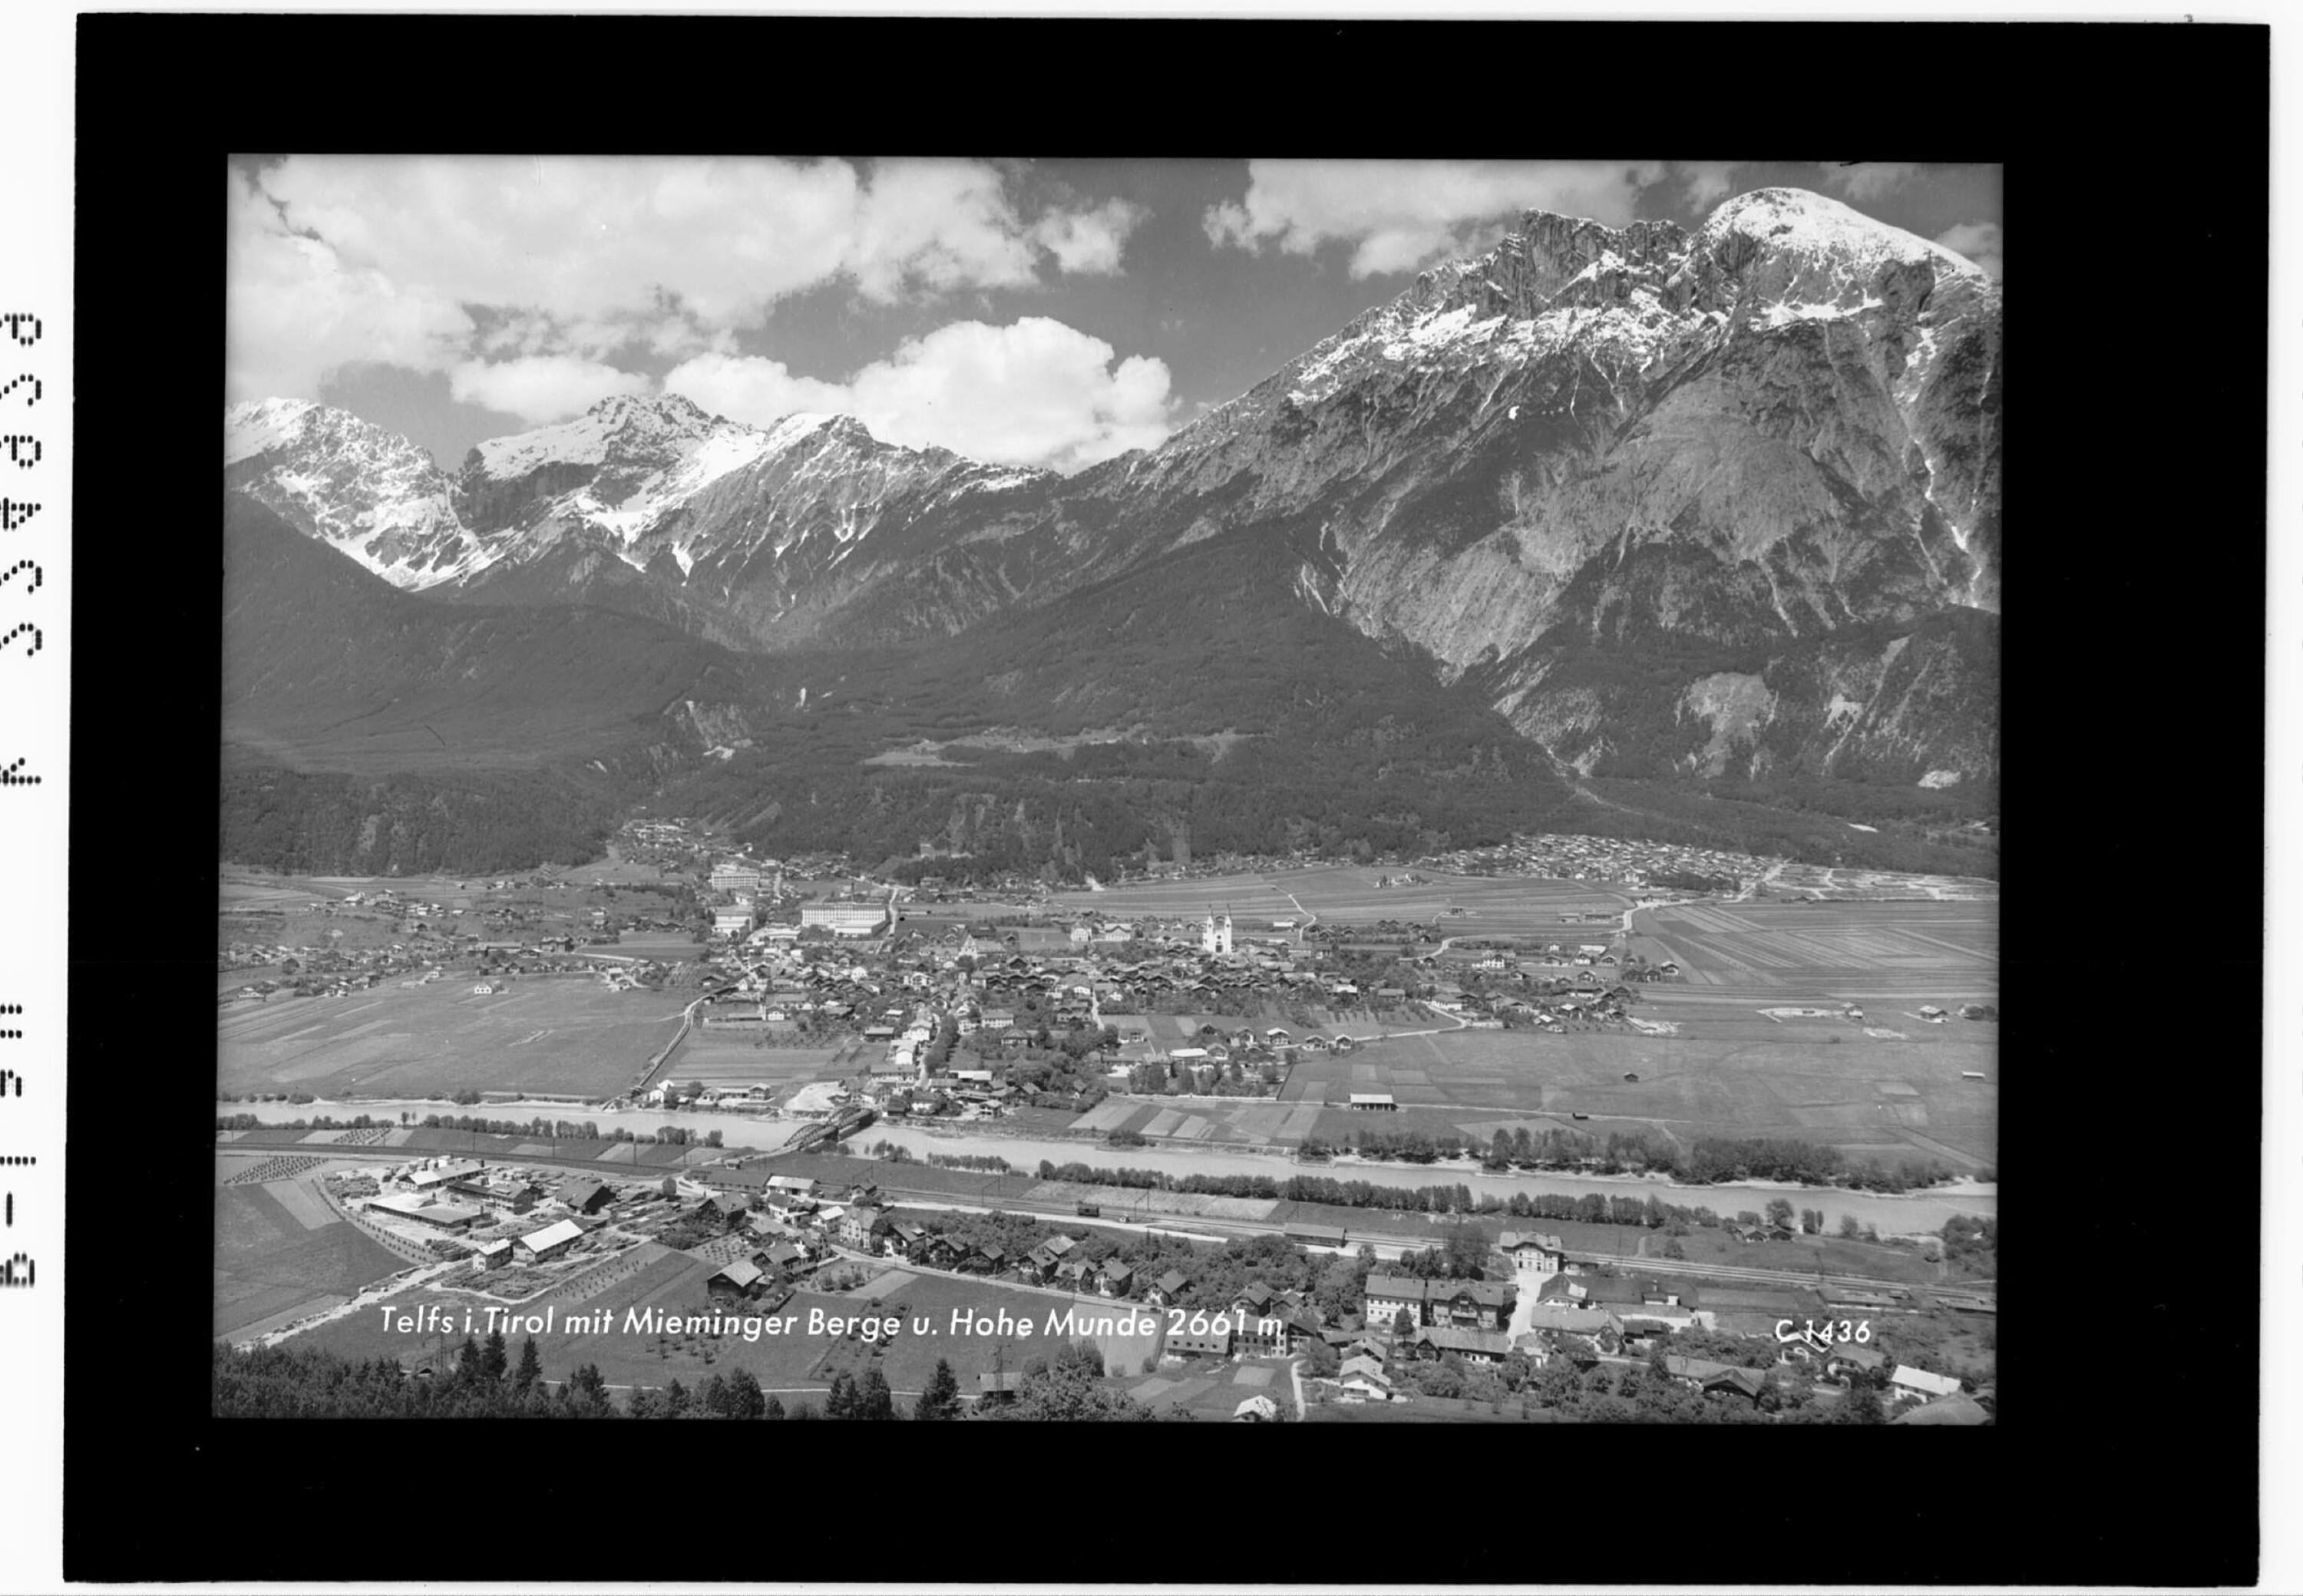 Telfs in Tirol mit Mieminger Berge und Hohe Munde 2661 m></div>


    <hr>
    <div class=